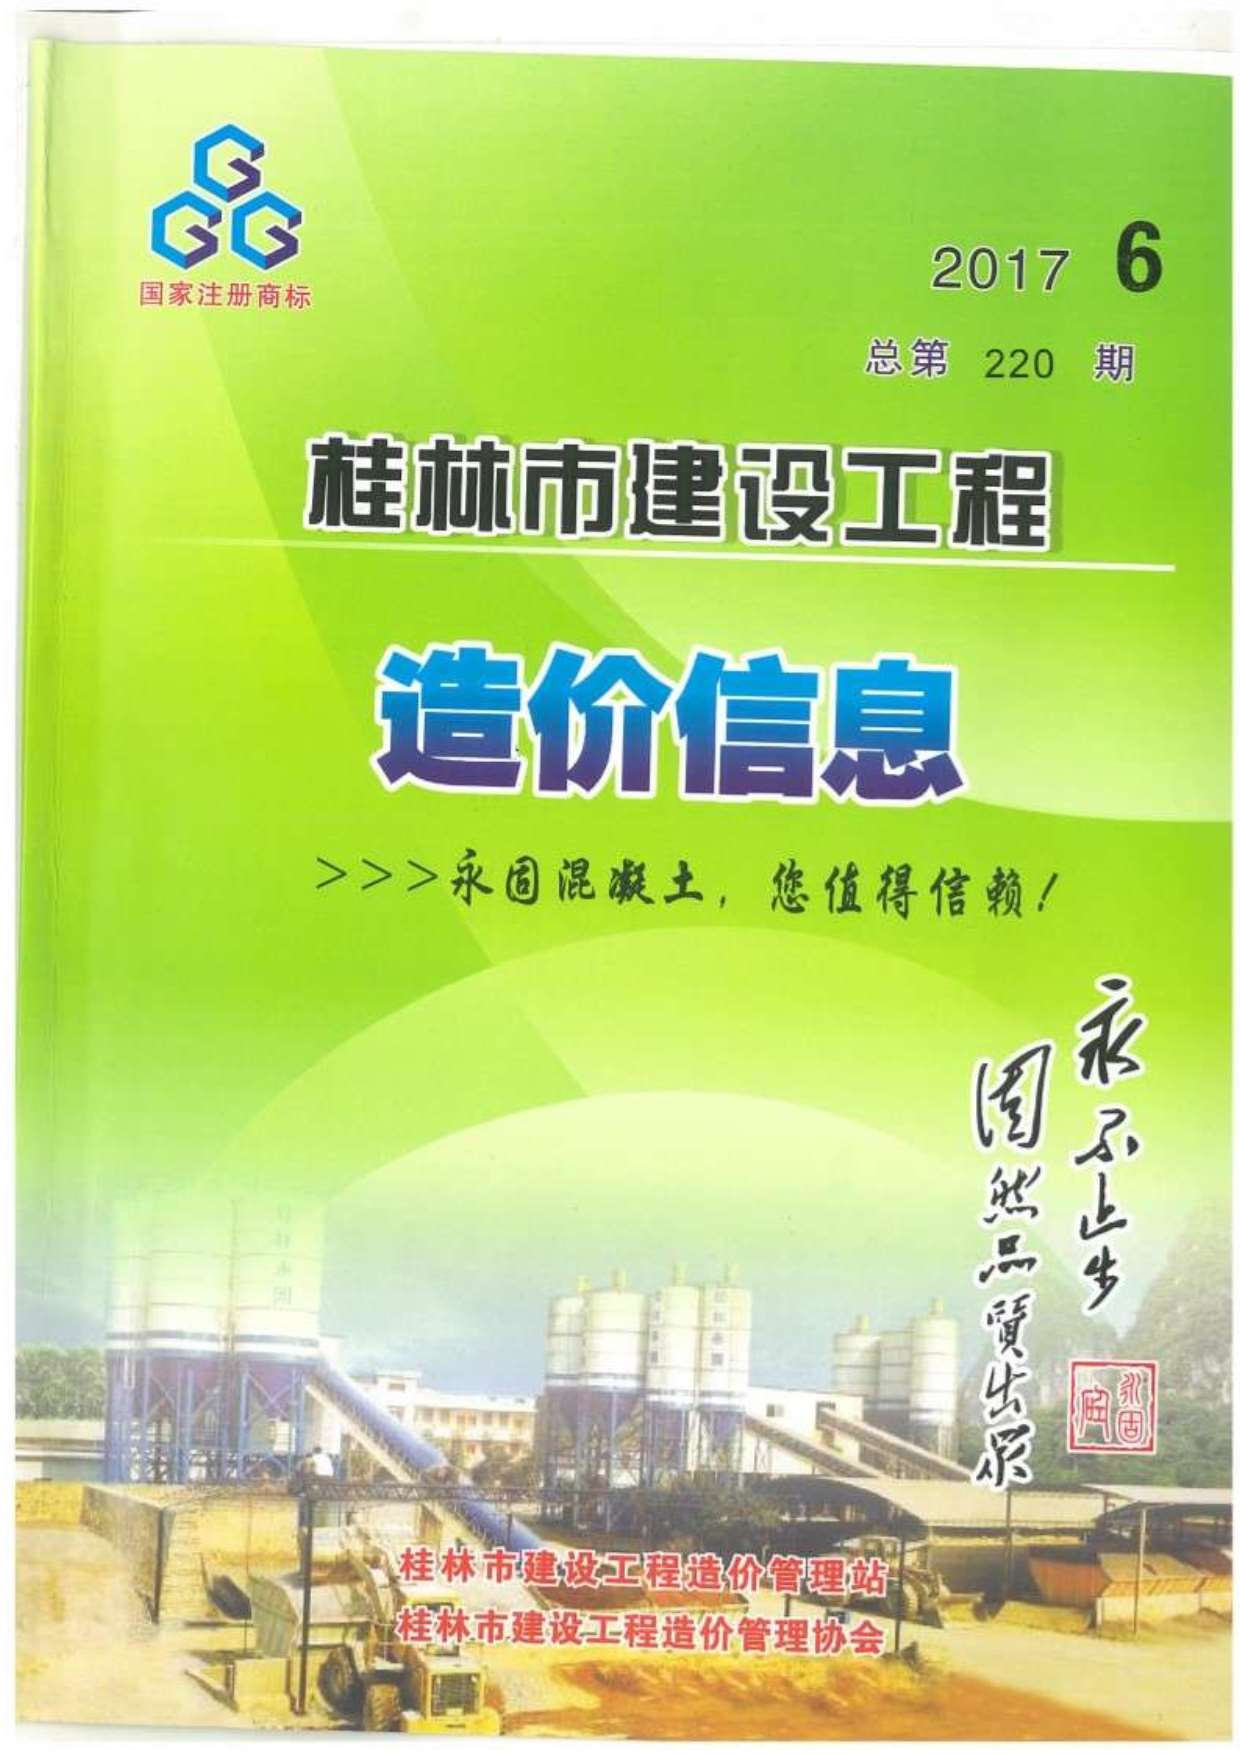 桂林市2017年6月建设工程造价信息